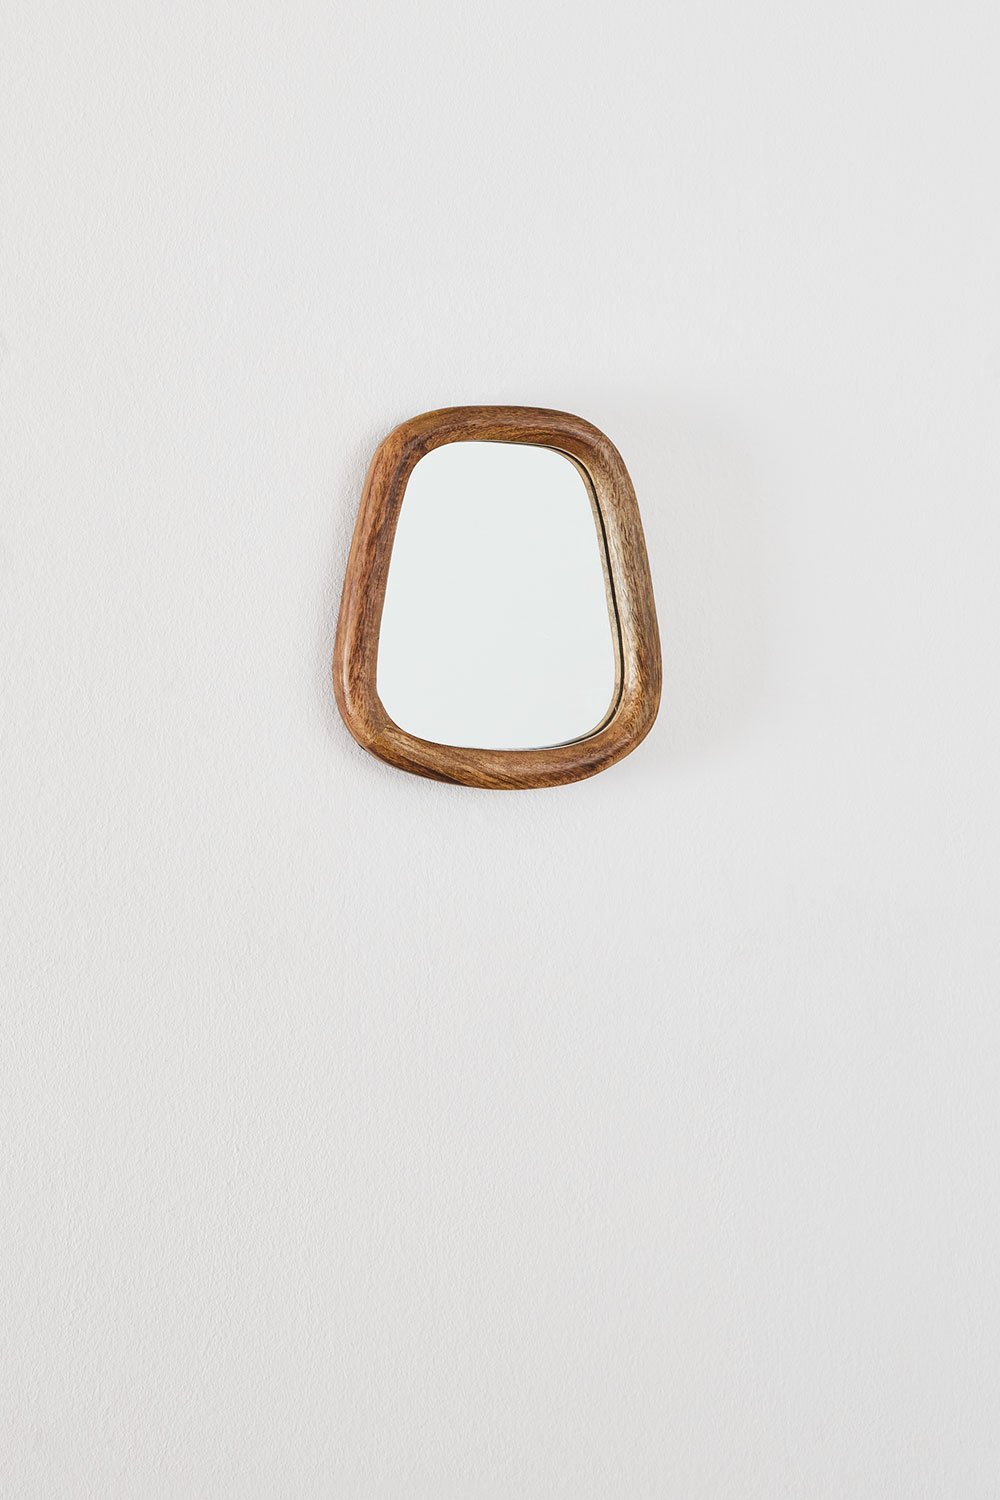 Prostokątne lustro ścienne z drewna mango (19x22 cm) Gabael Design , obrazek w galerii 1